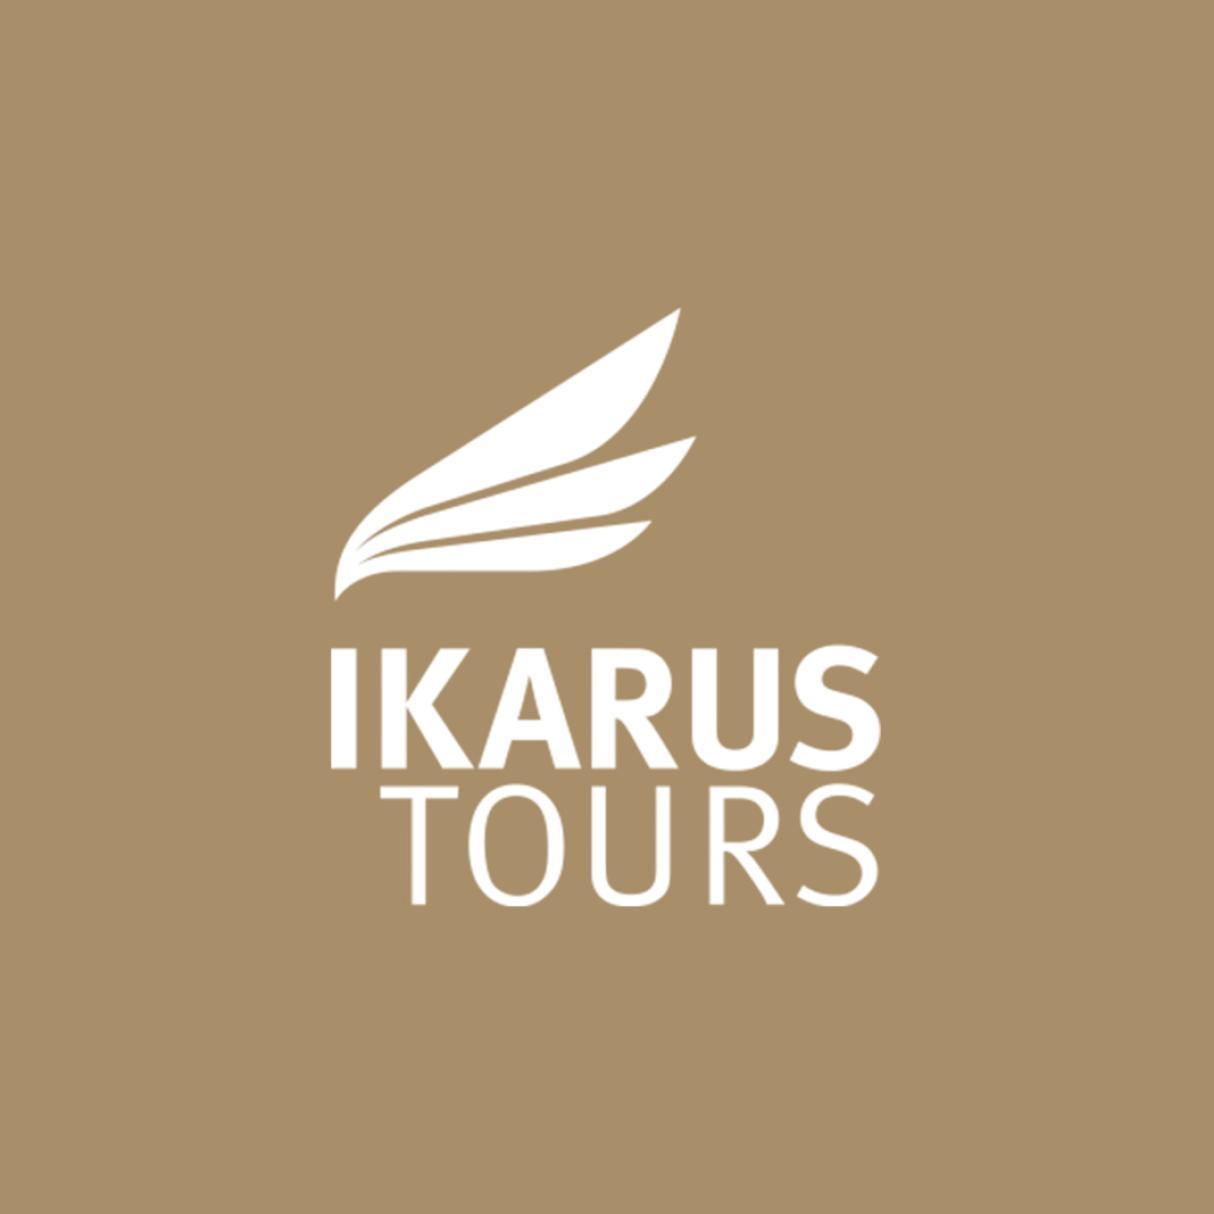 Ikarus Tours logo